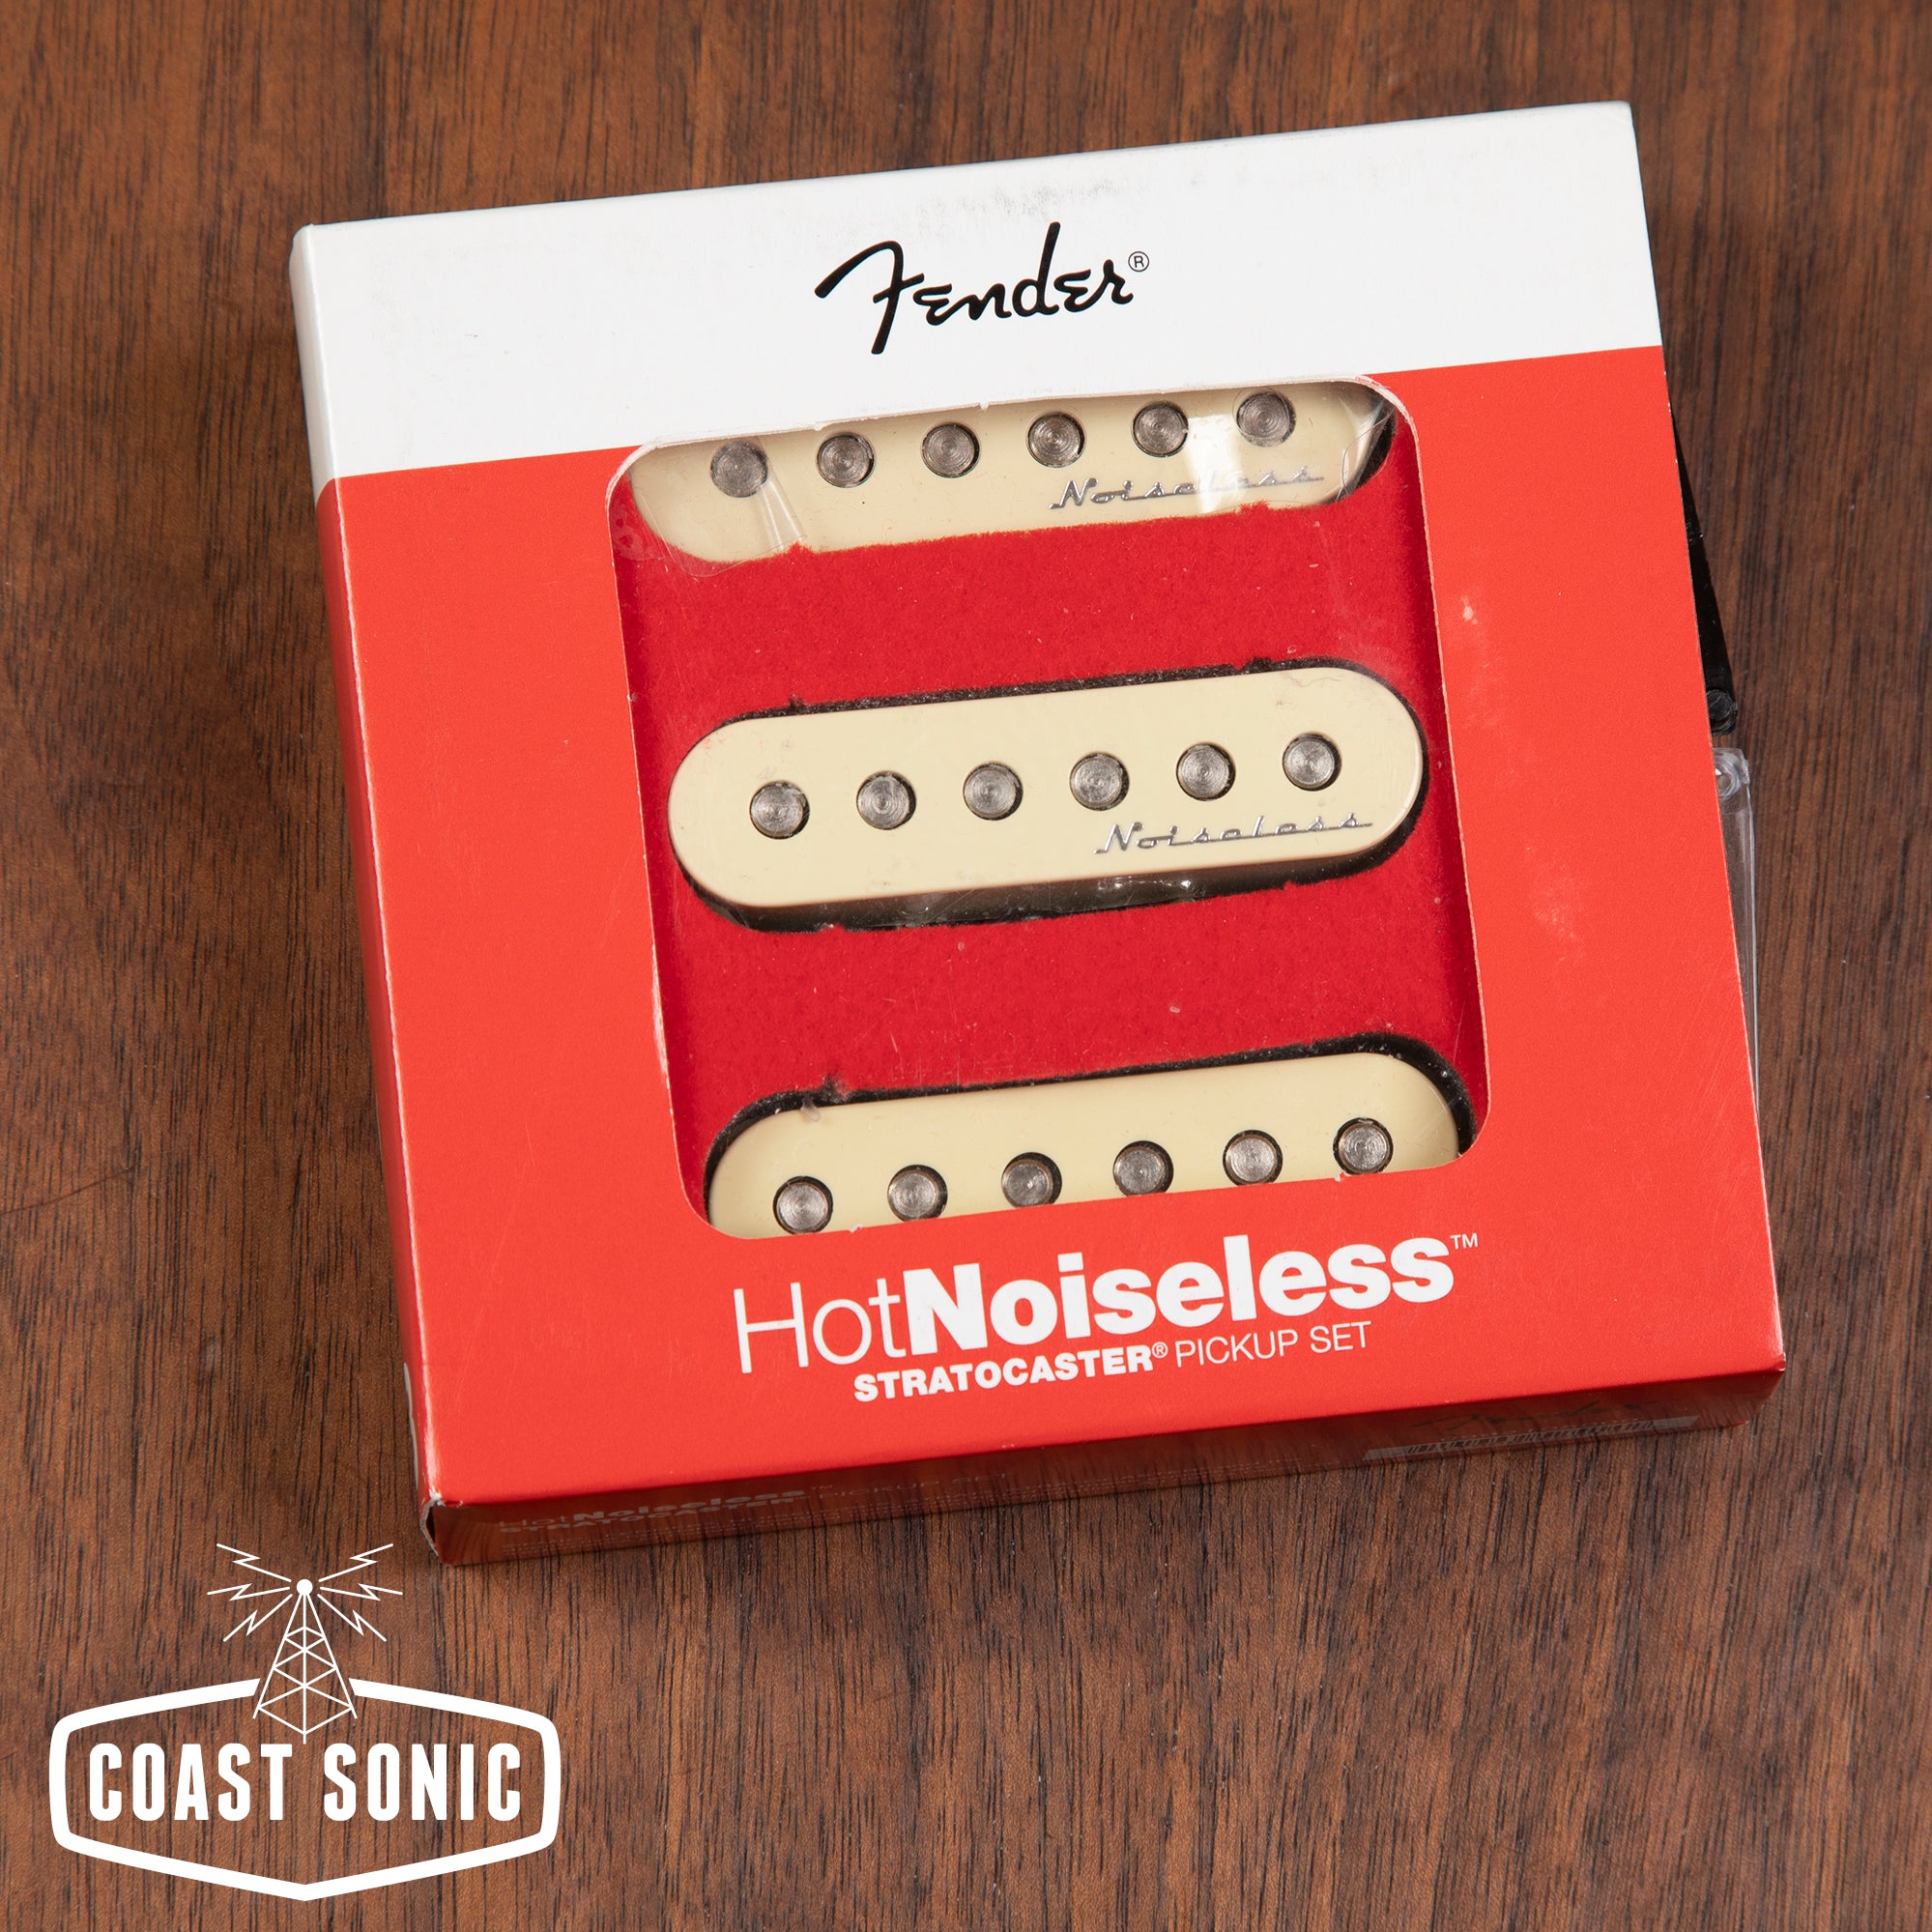 Fender Hot Noiseless Stratocaster Pickup Set